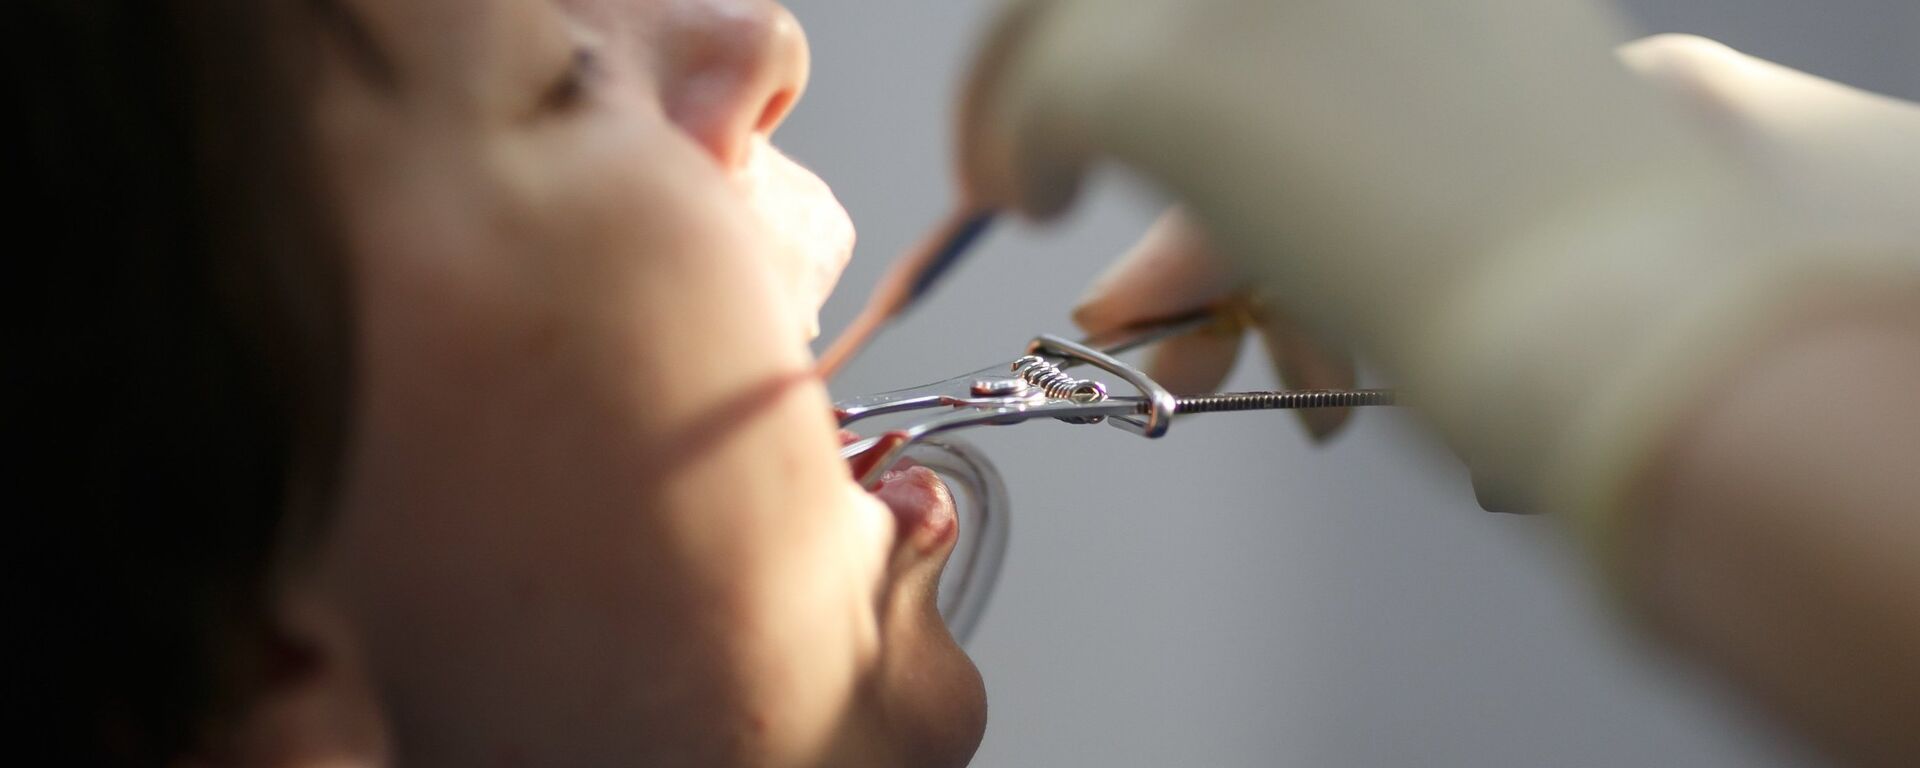 Если правильно ухаживать за зубами, визиты к стоматологу можно свести к минимуму - Sputnik Беларусь, 1920, 07.02.2022